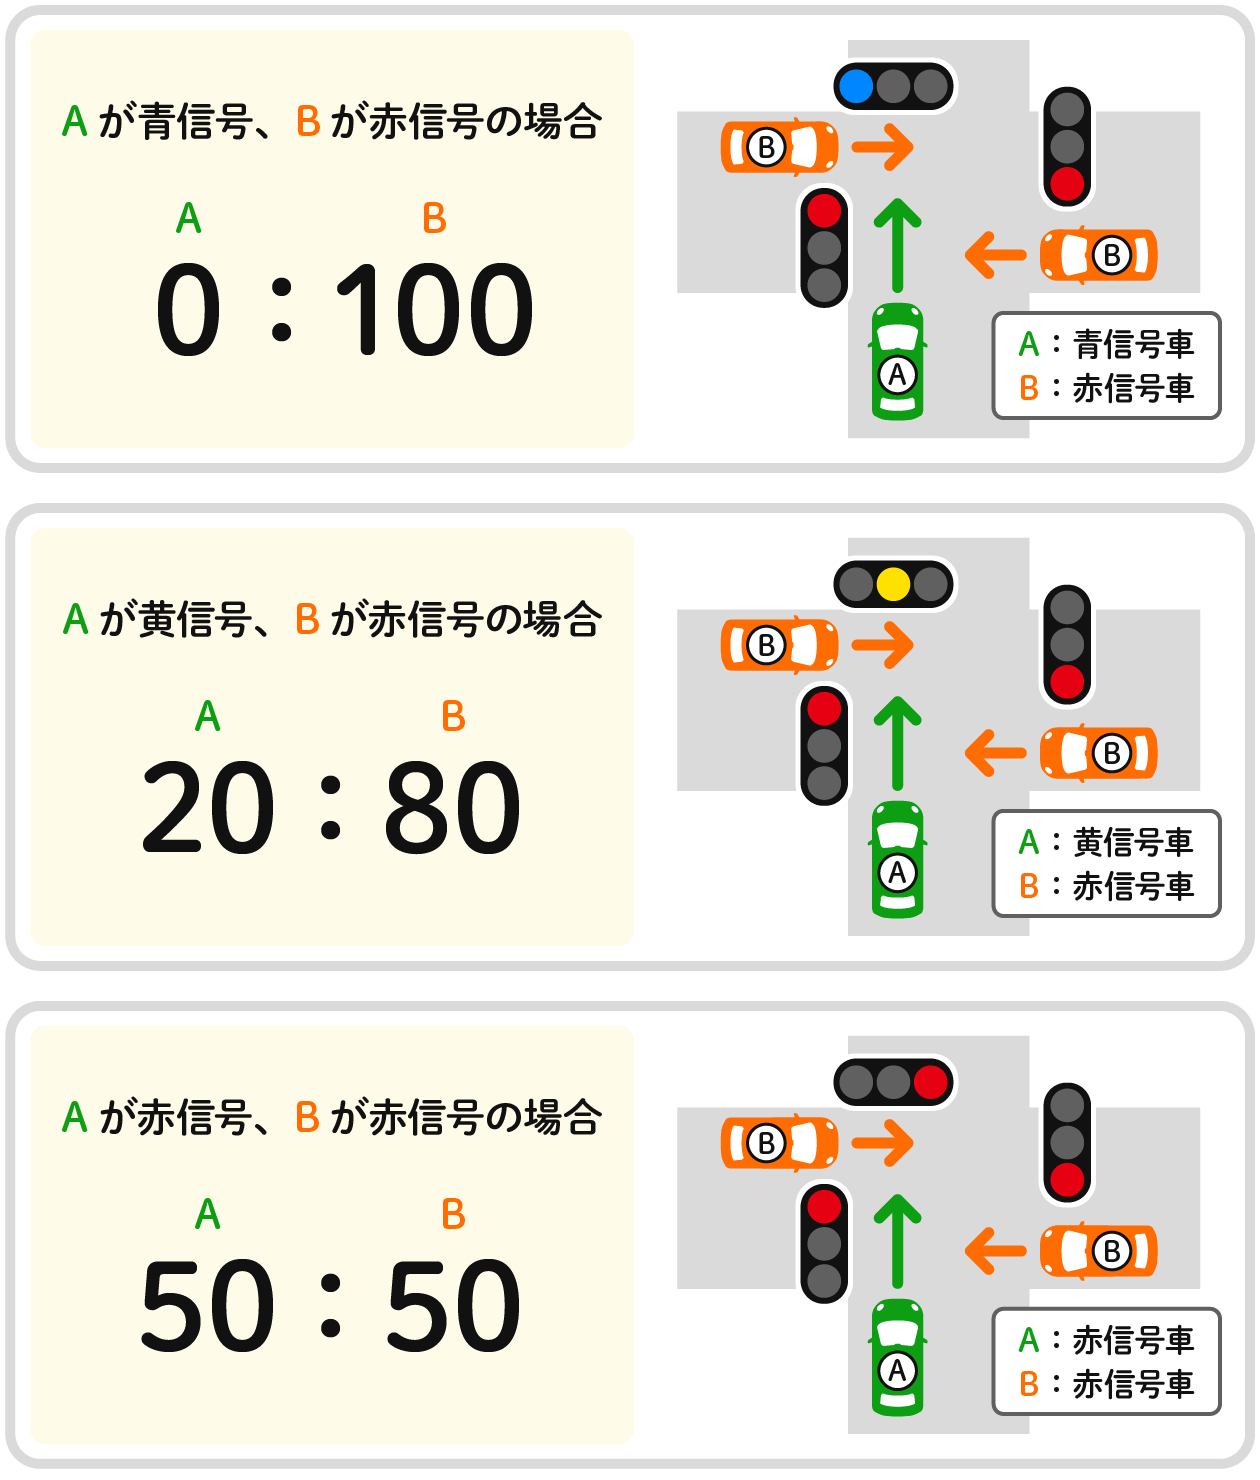 信号機のある交差点で起きた、直進車同士の事故における基本の過失割合を示す図。自動車A（以下A）が青信号、自動車B（以下B）が赤信号の場合の過失割合は「0:100」